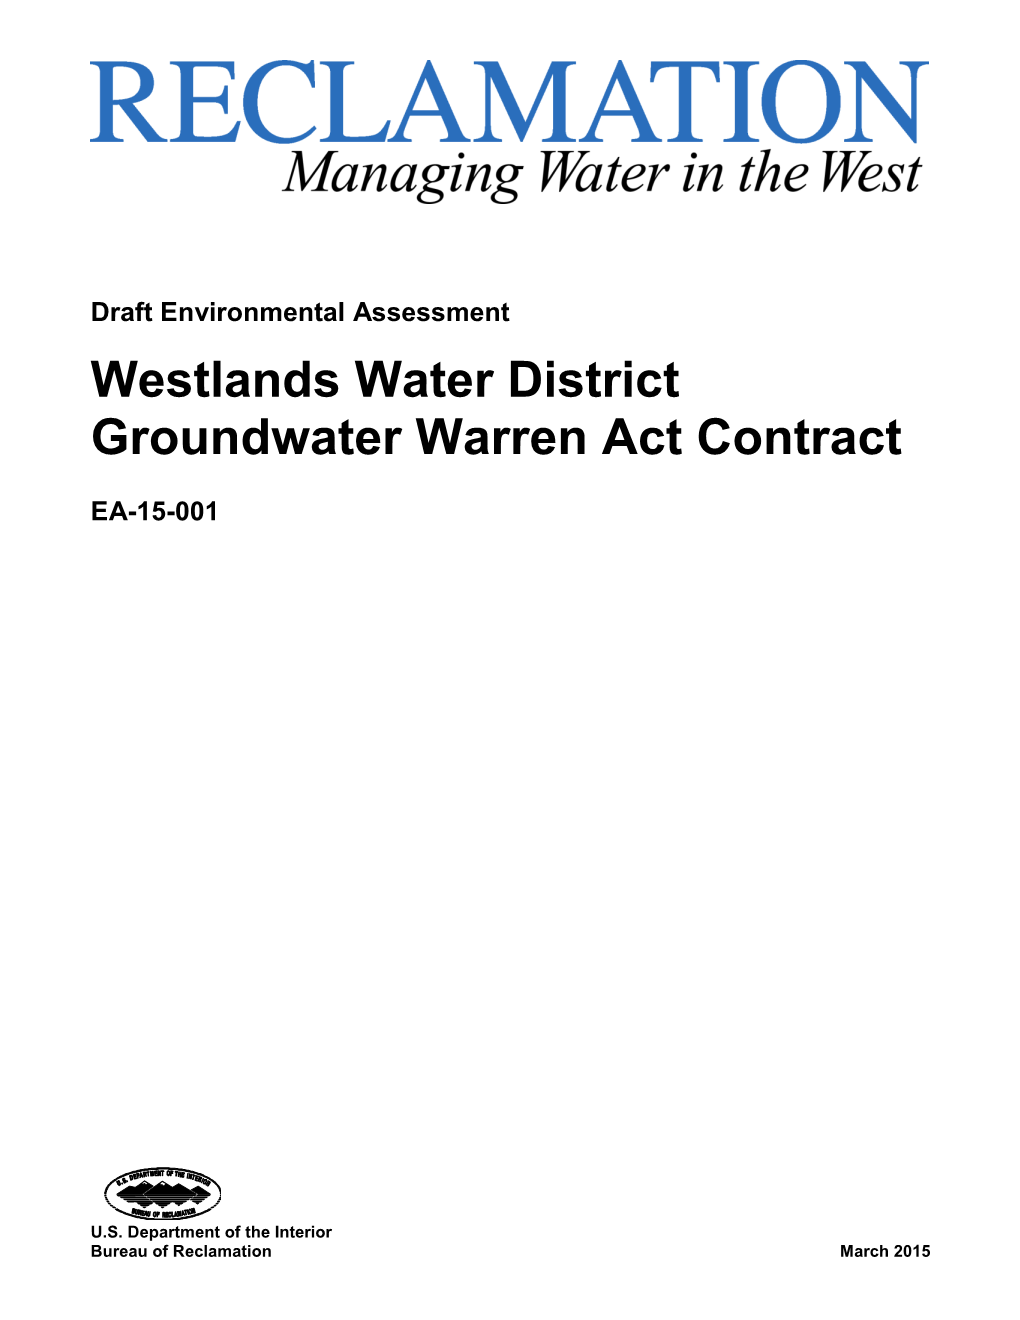 Westlands Water District Groundwater Warren Act Contract